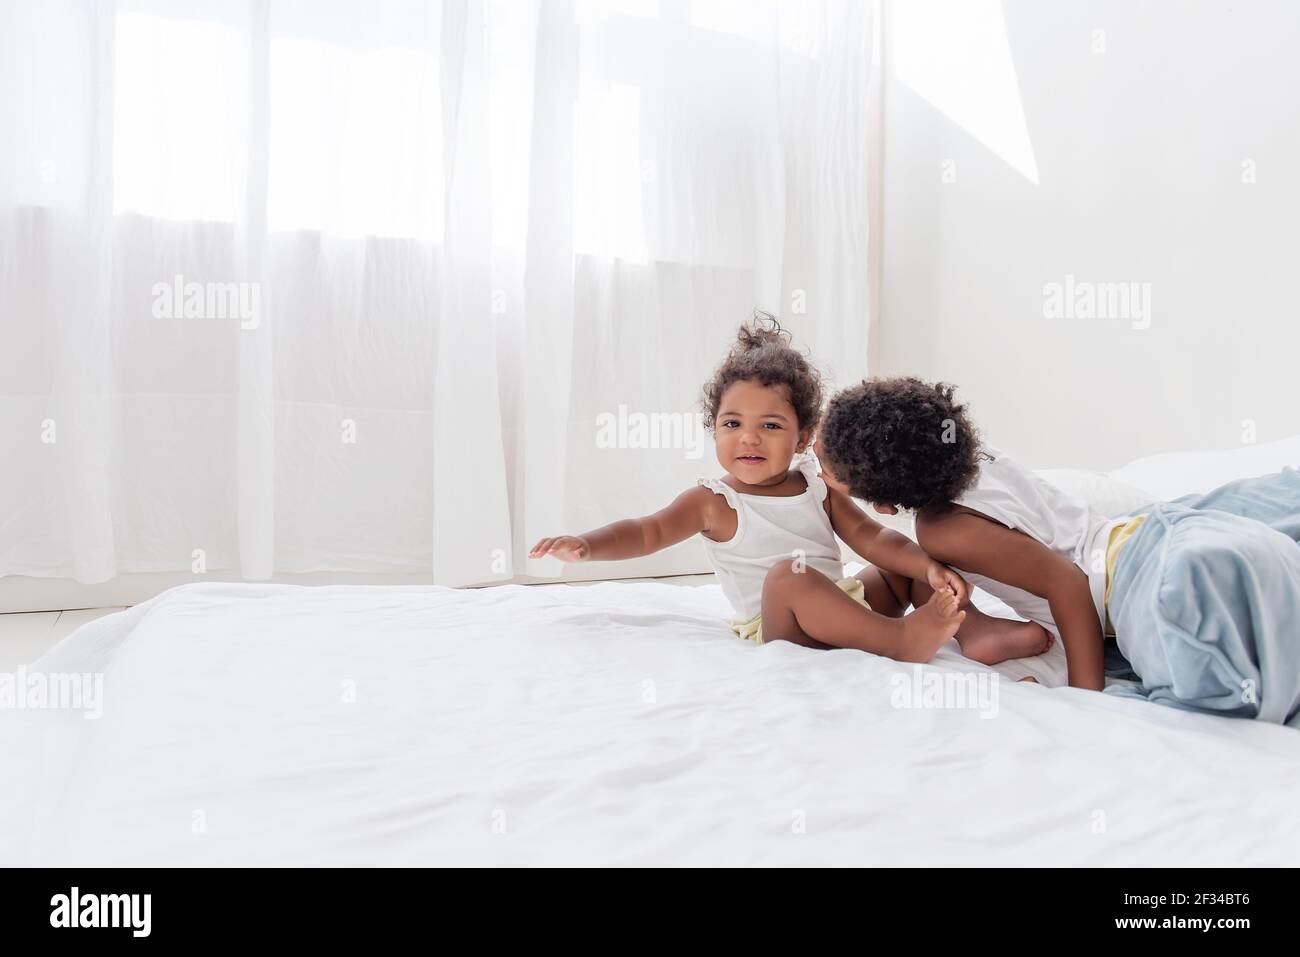 Bruder und Schwester Afroamerikaner spielen zusammen auf weißem Bett im Loft-Innenraum. Geschwister haben Spaß unter den blauen Kissen am Morgen. kissi Stockfoto